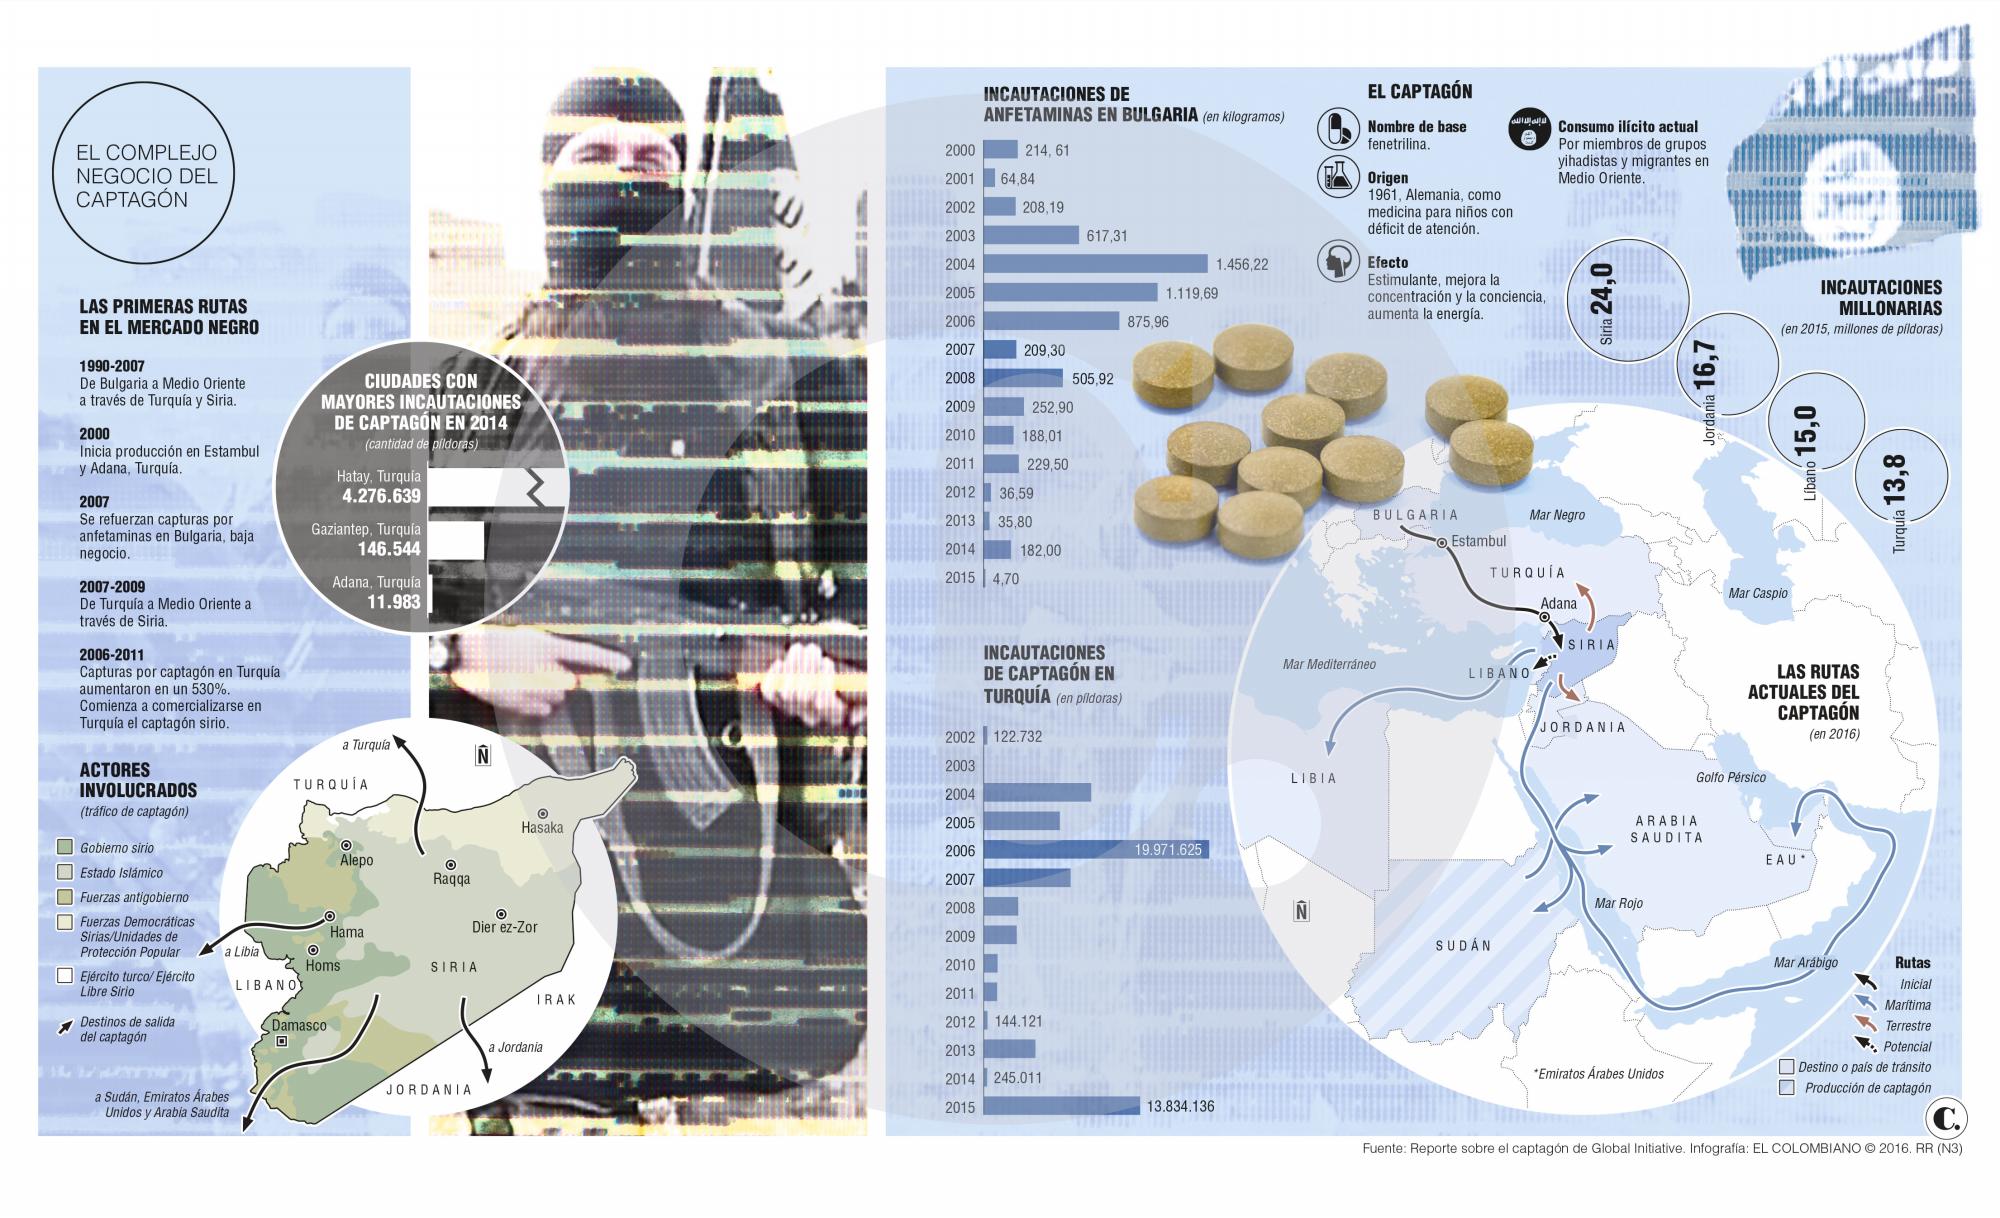 Captagón, <br />el monstruo invisible de la guerra siria